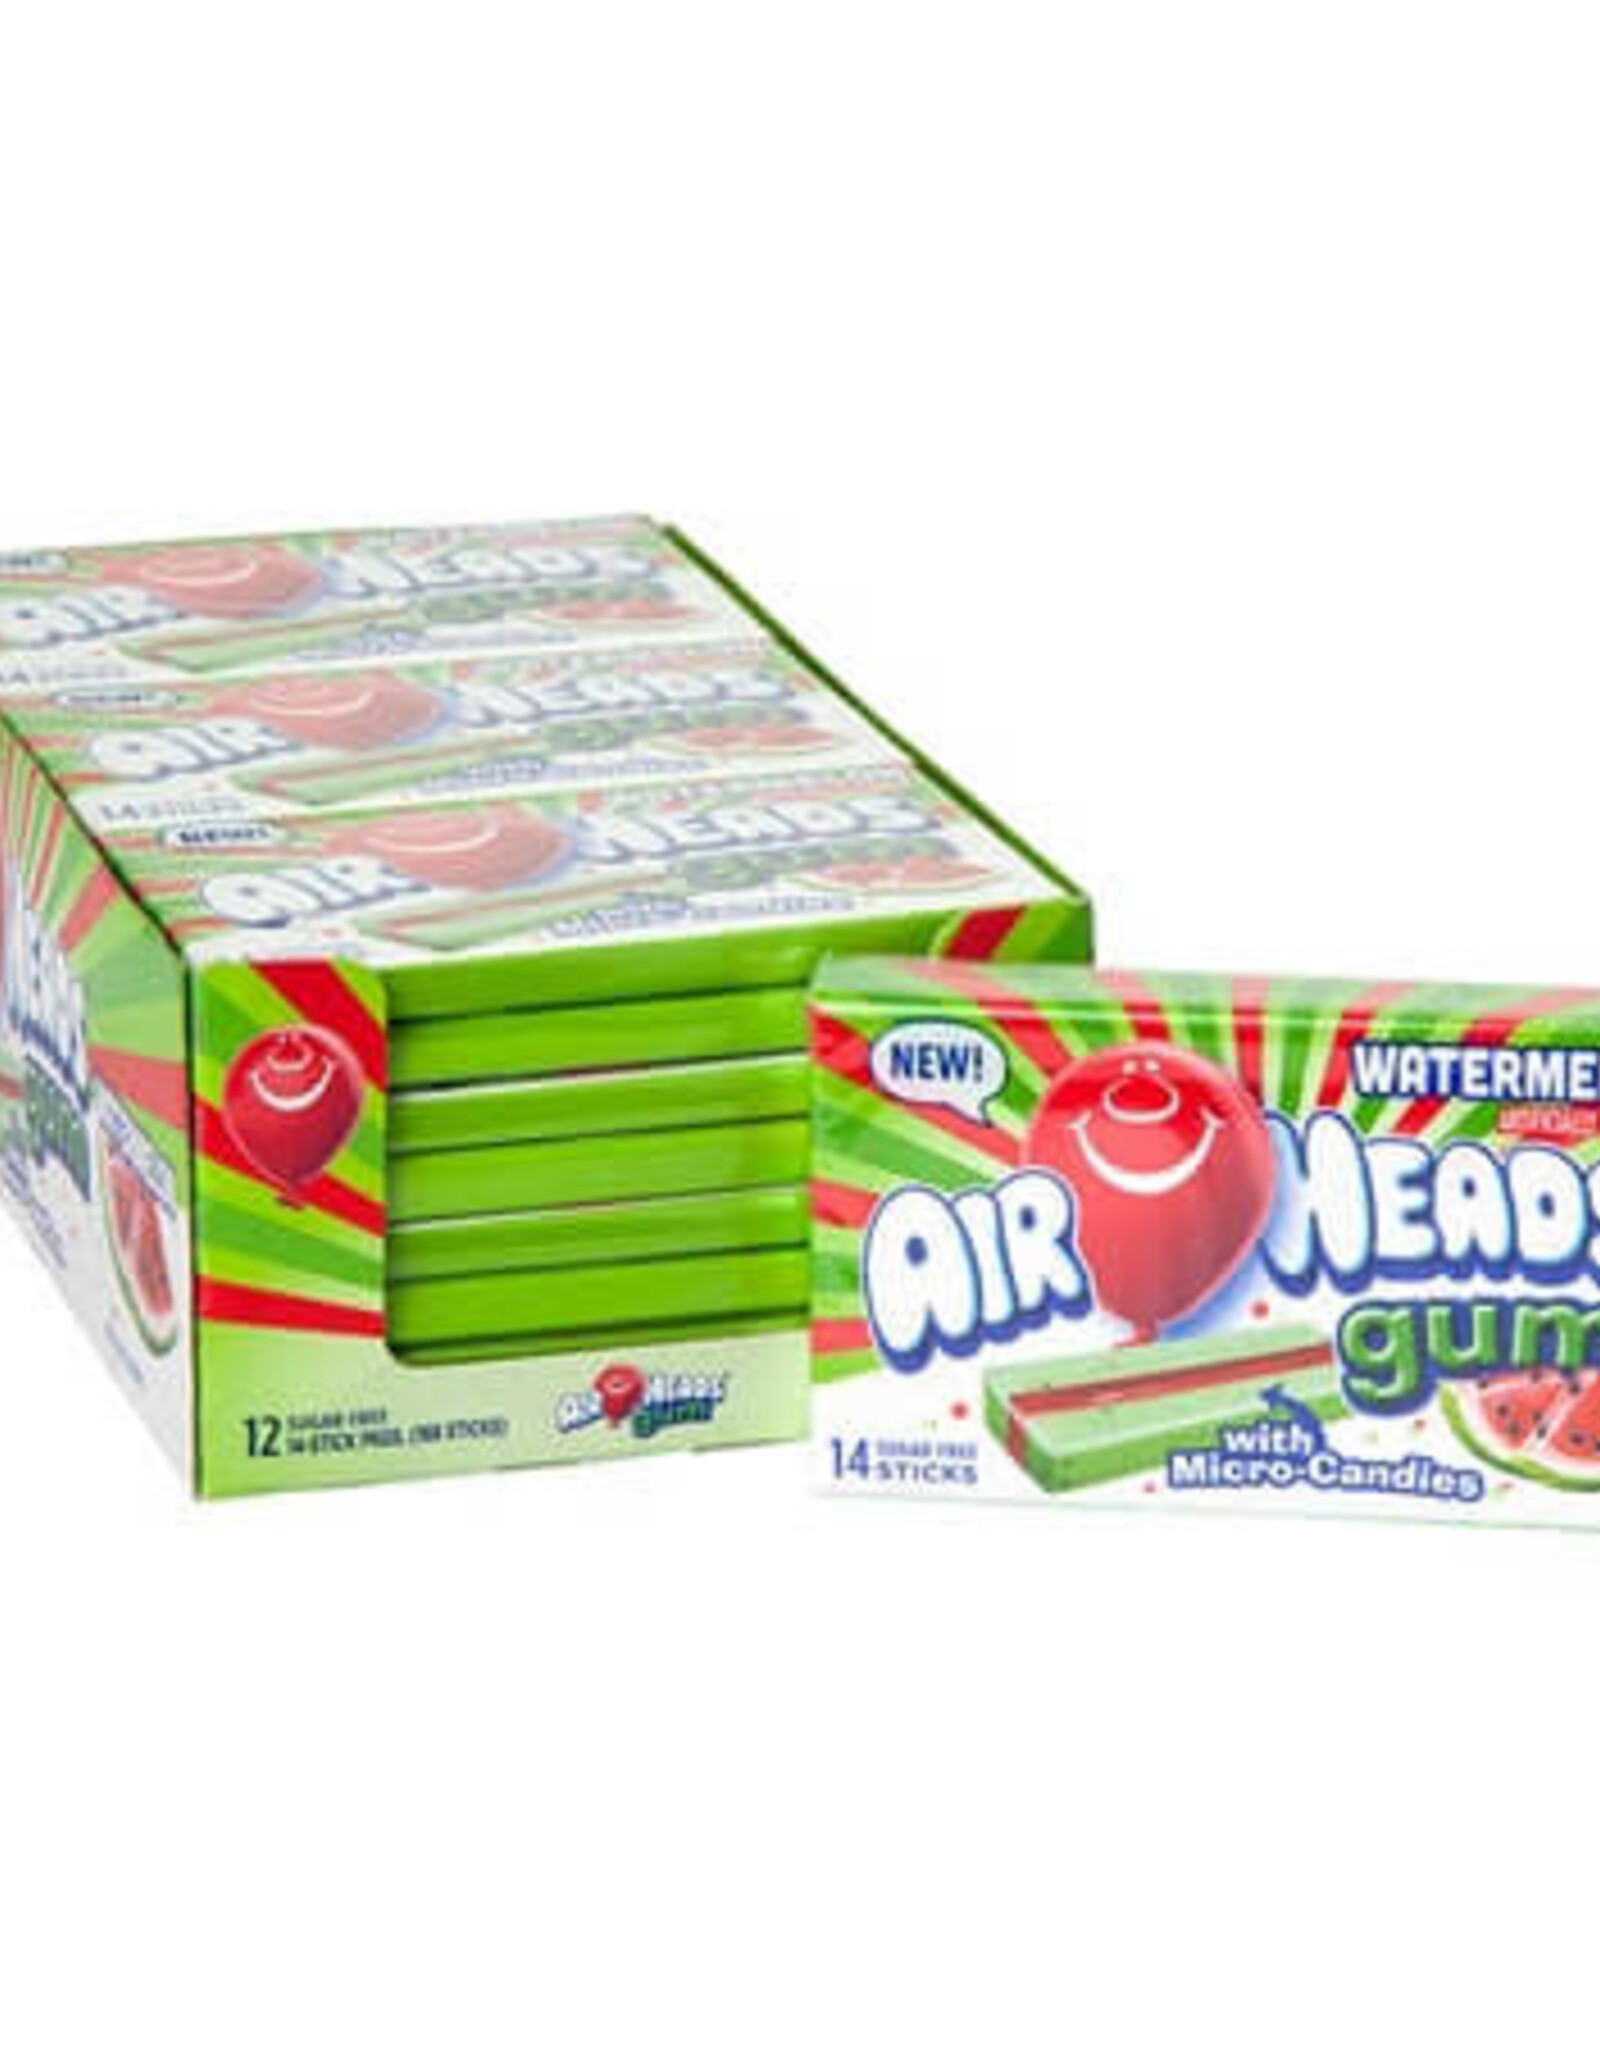 Pacific Candy Watermelon Airhead gum